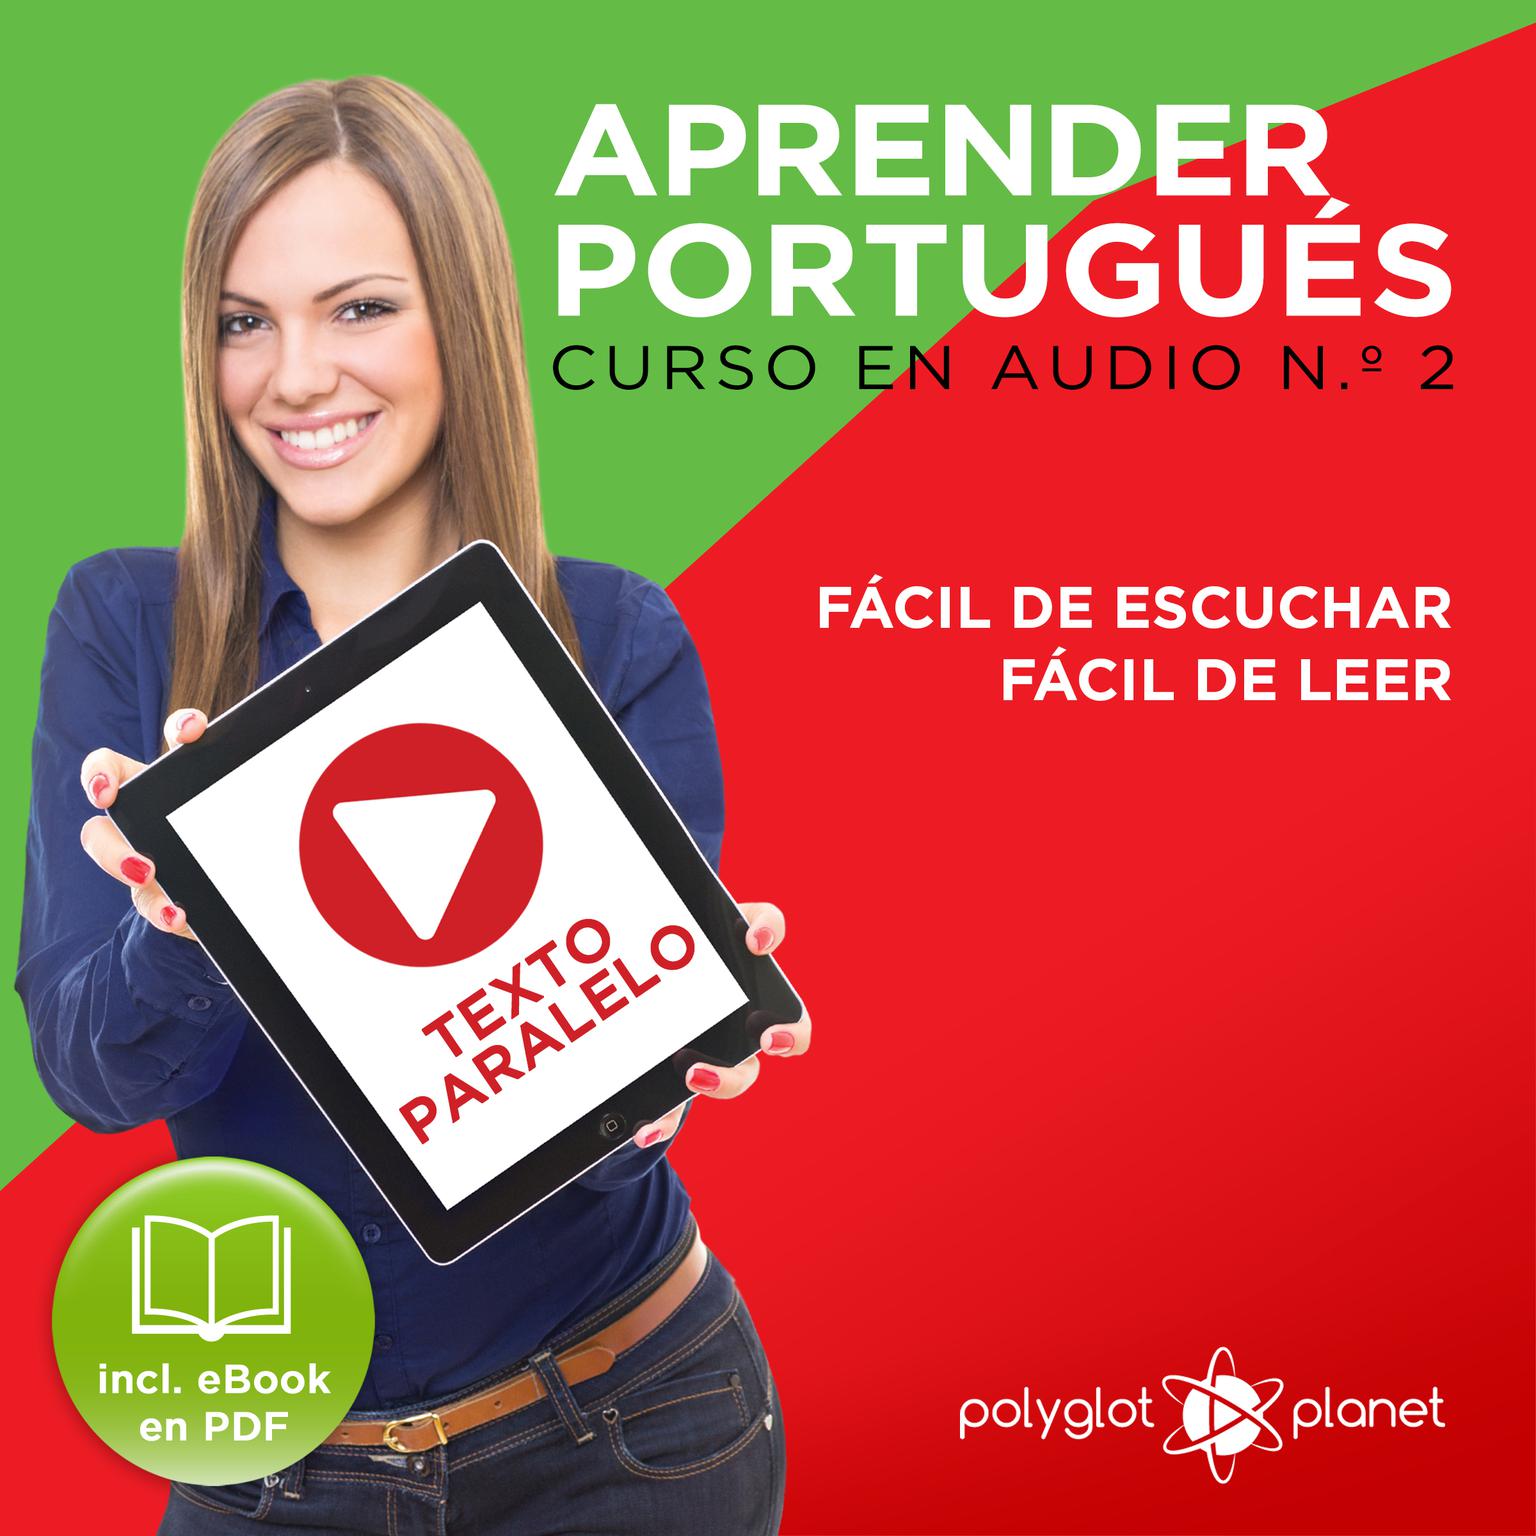 Aprender Portugués - Texto Paralelo - Fácil de Leer - Fácil de Escuchar: Curso en Audio, No. 2 [Learn Portugese - Parallel Text - Easy Reader - Easy Audio: Audio Course No. 2]: Lectura Fácil en Portugués Audiobook, by Polyglot Planet